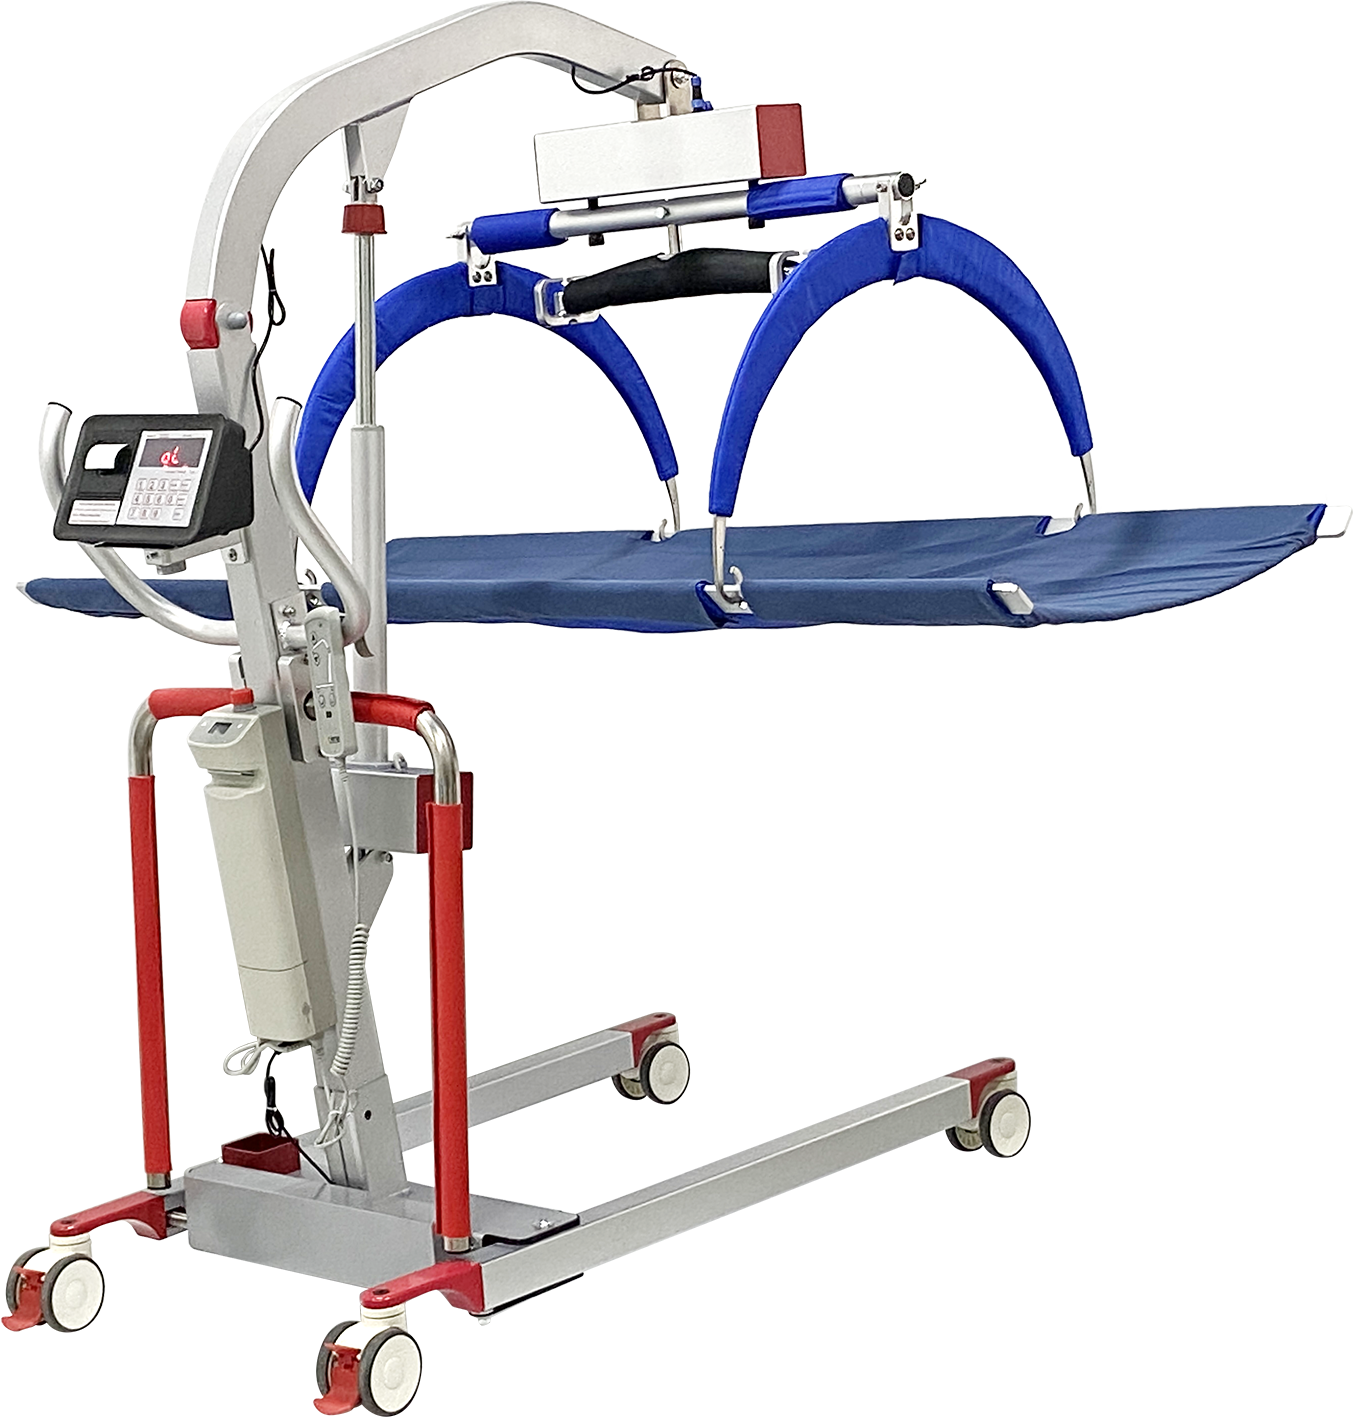 BHH-YWJ-D03A
帮助重症患者平稳转运的设备，可用于短距离移位、称重、康复训练行走